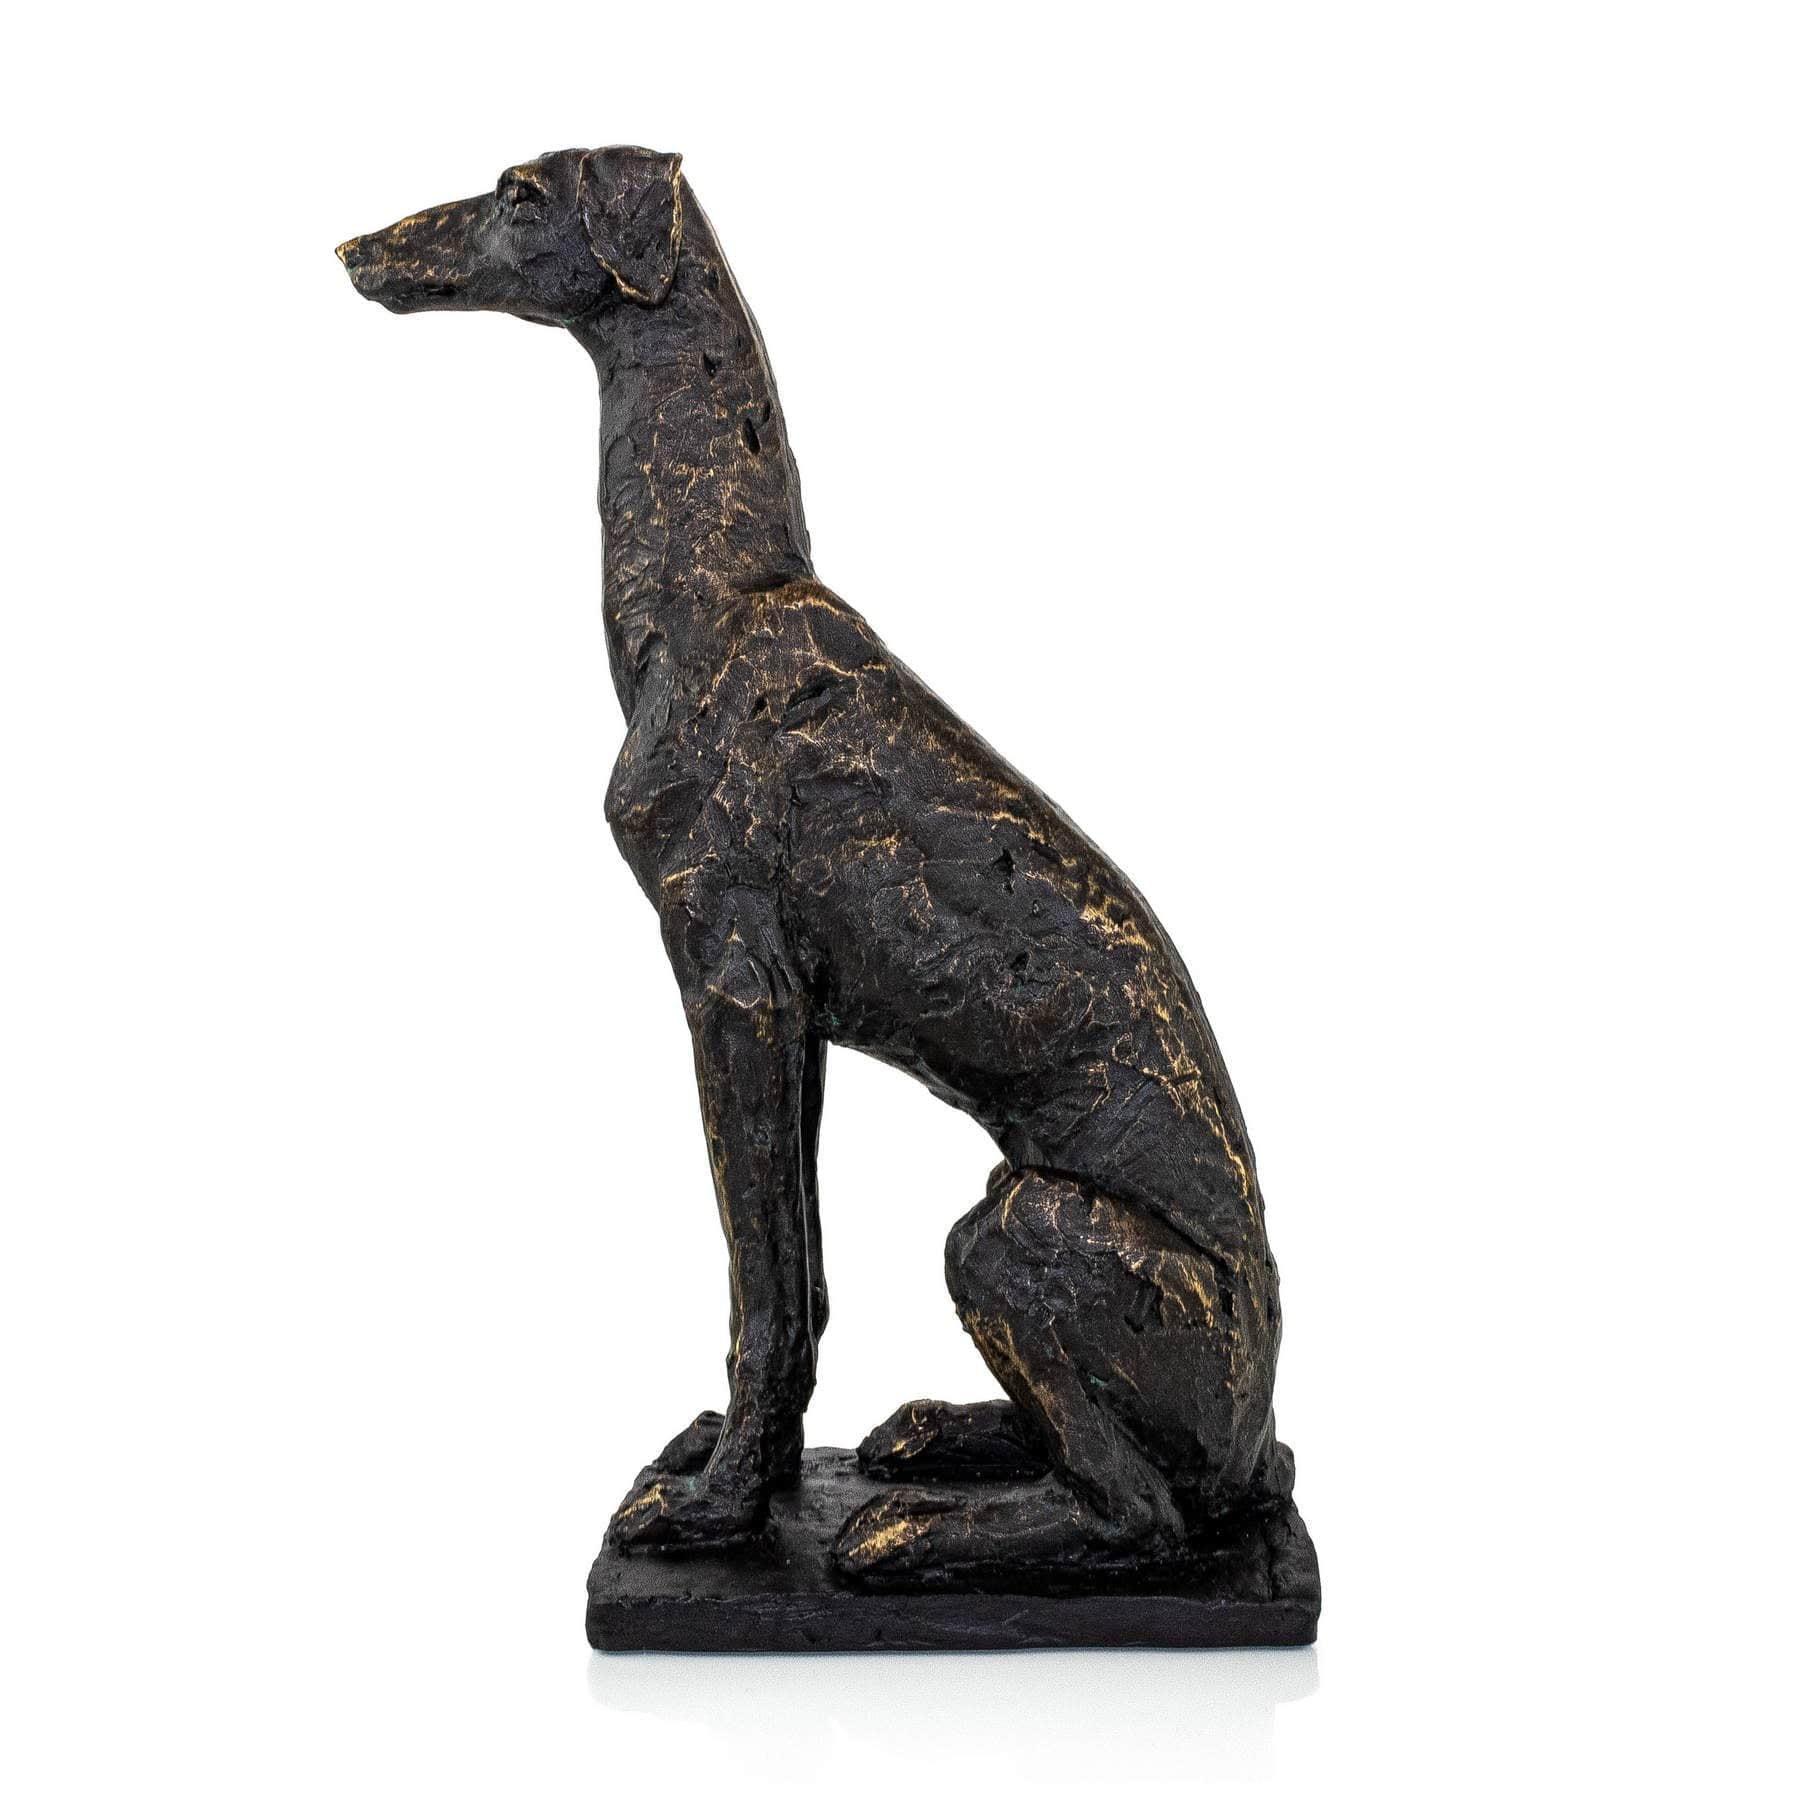 Grayhound Textured & Tall Dog Sculpture Sculptures & Statues